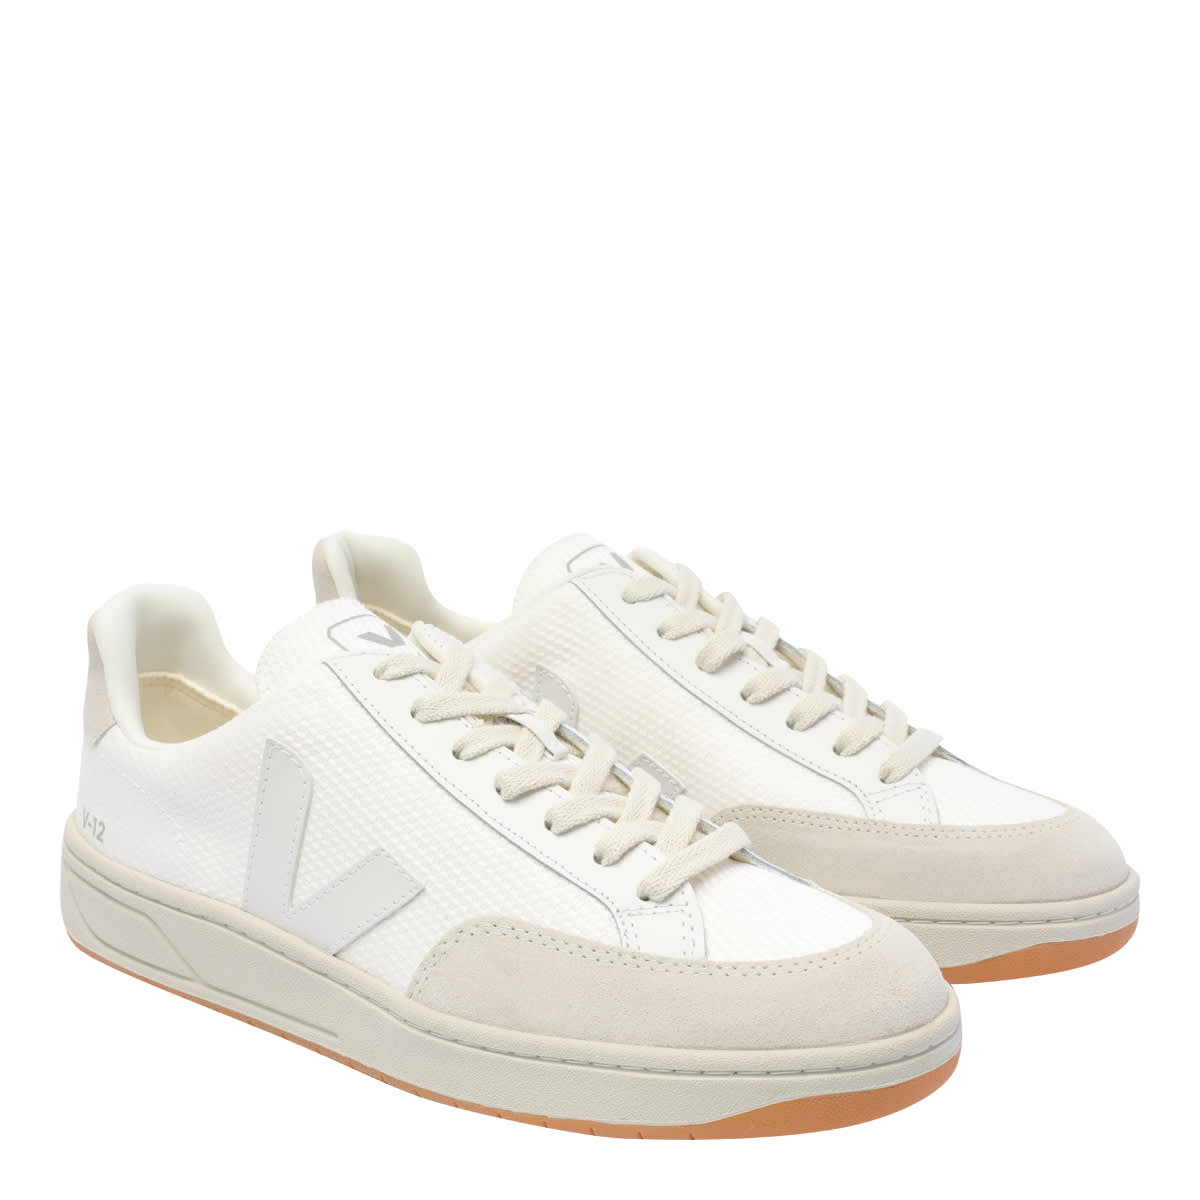 Shop Veja V-12 B-mesh Sneakers In White